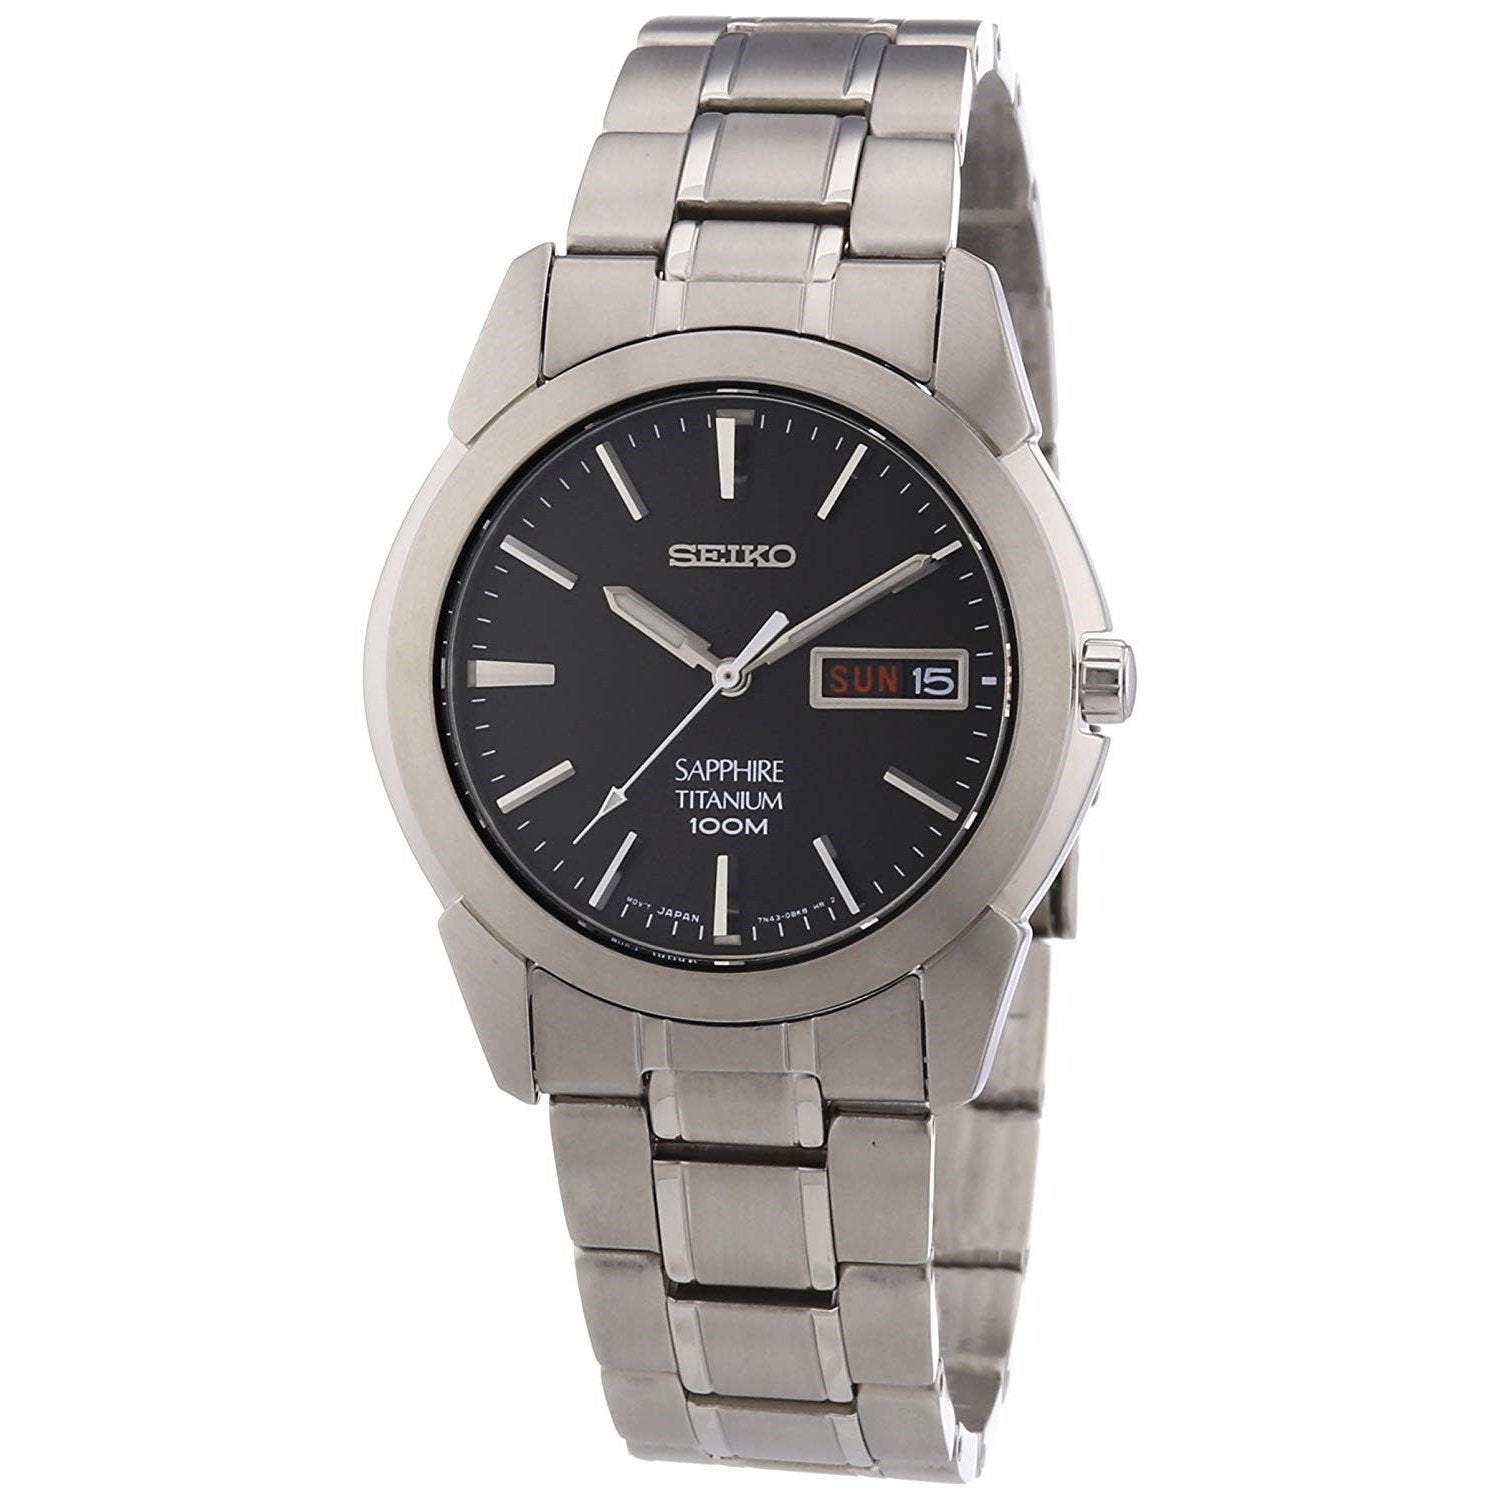 Seiko Men's SGG731 Titanium Watch - Bezali